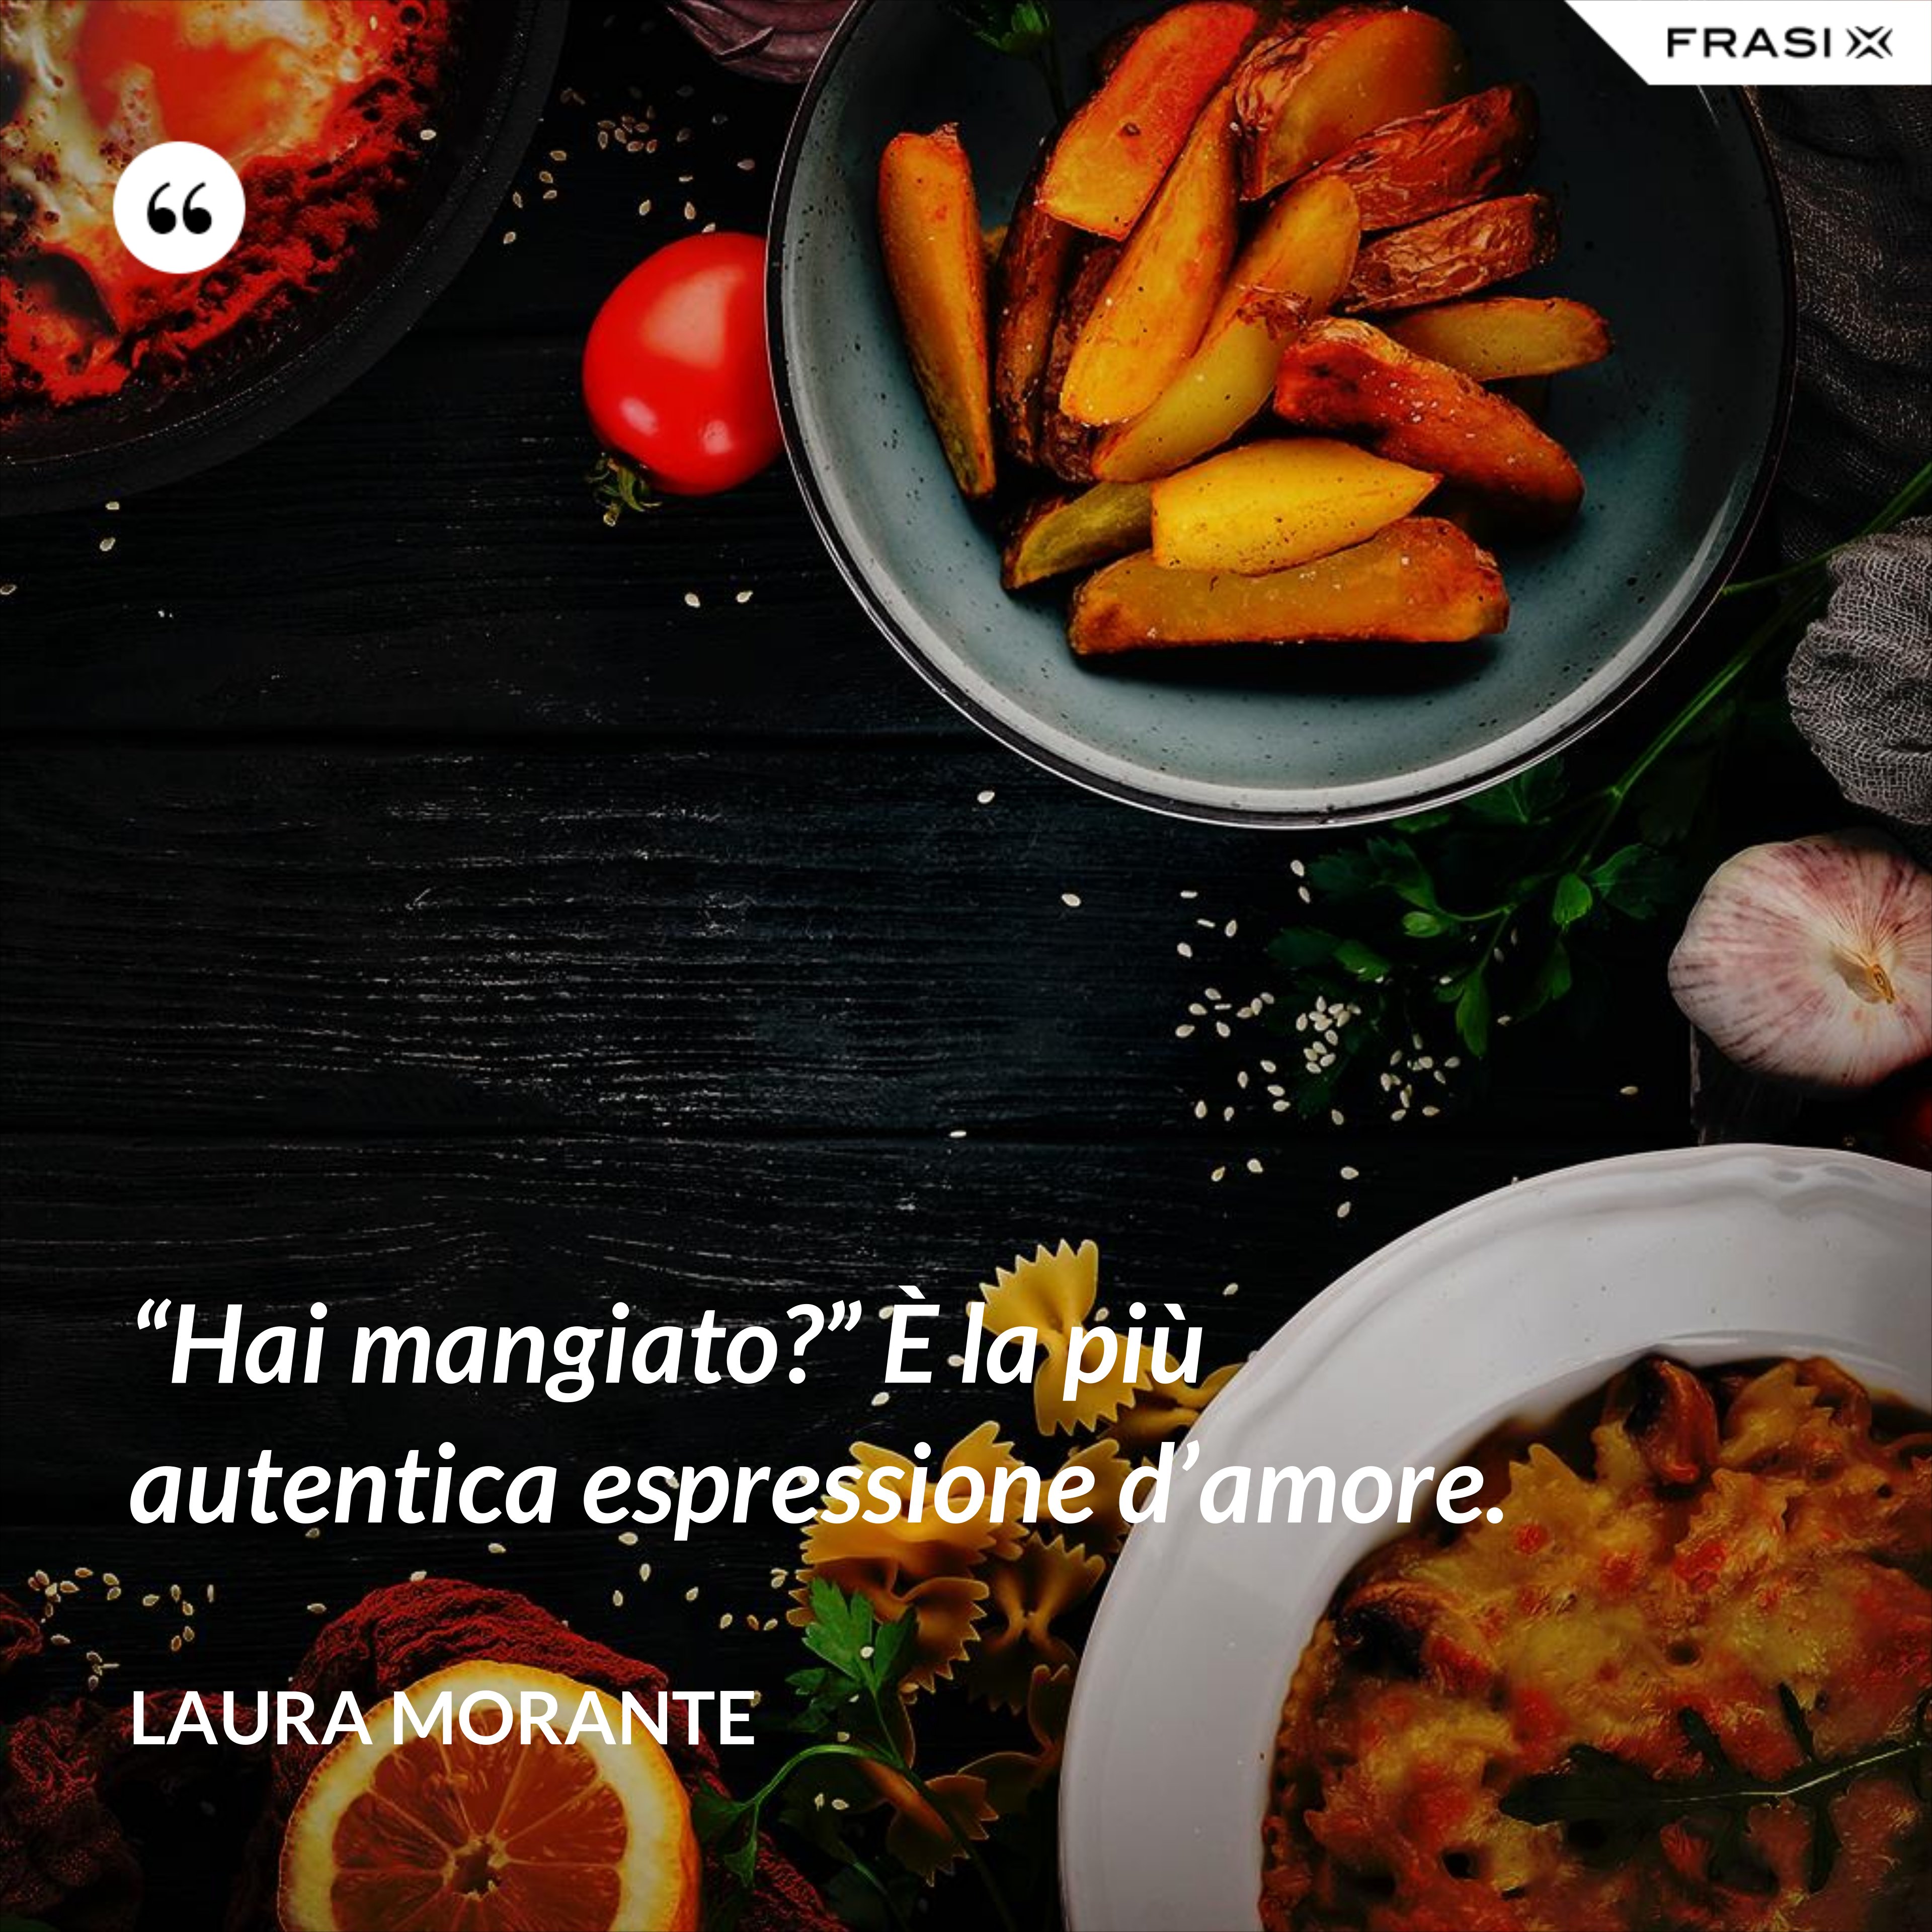 “Hai mangiato?” È la più autentica espressione d’amore. - Laura Morante